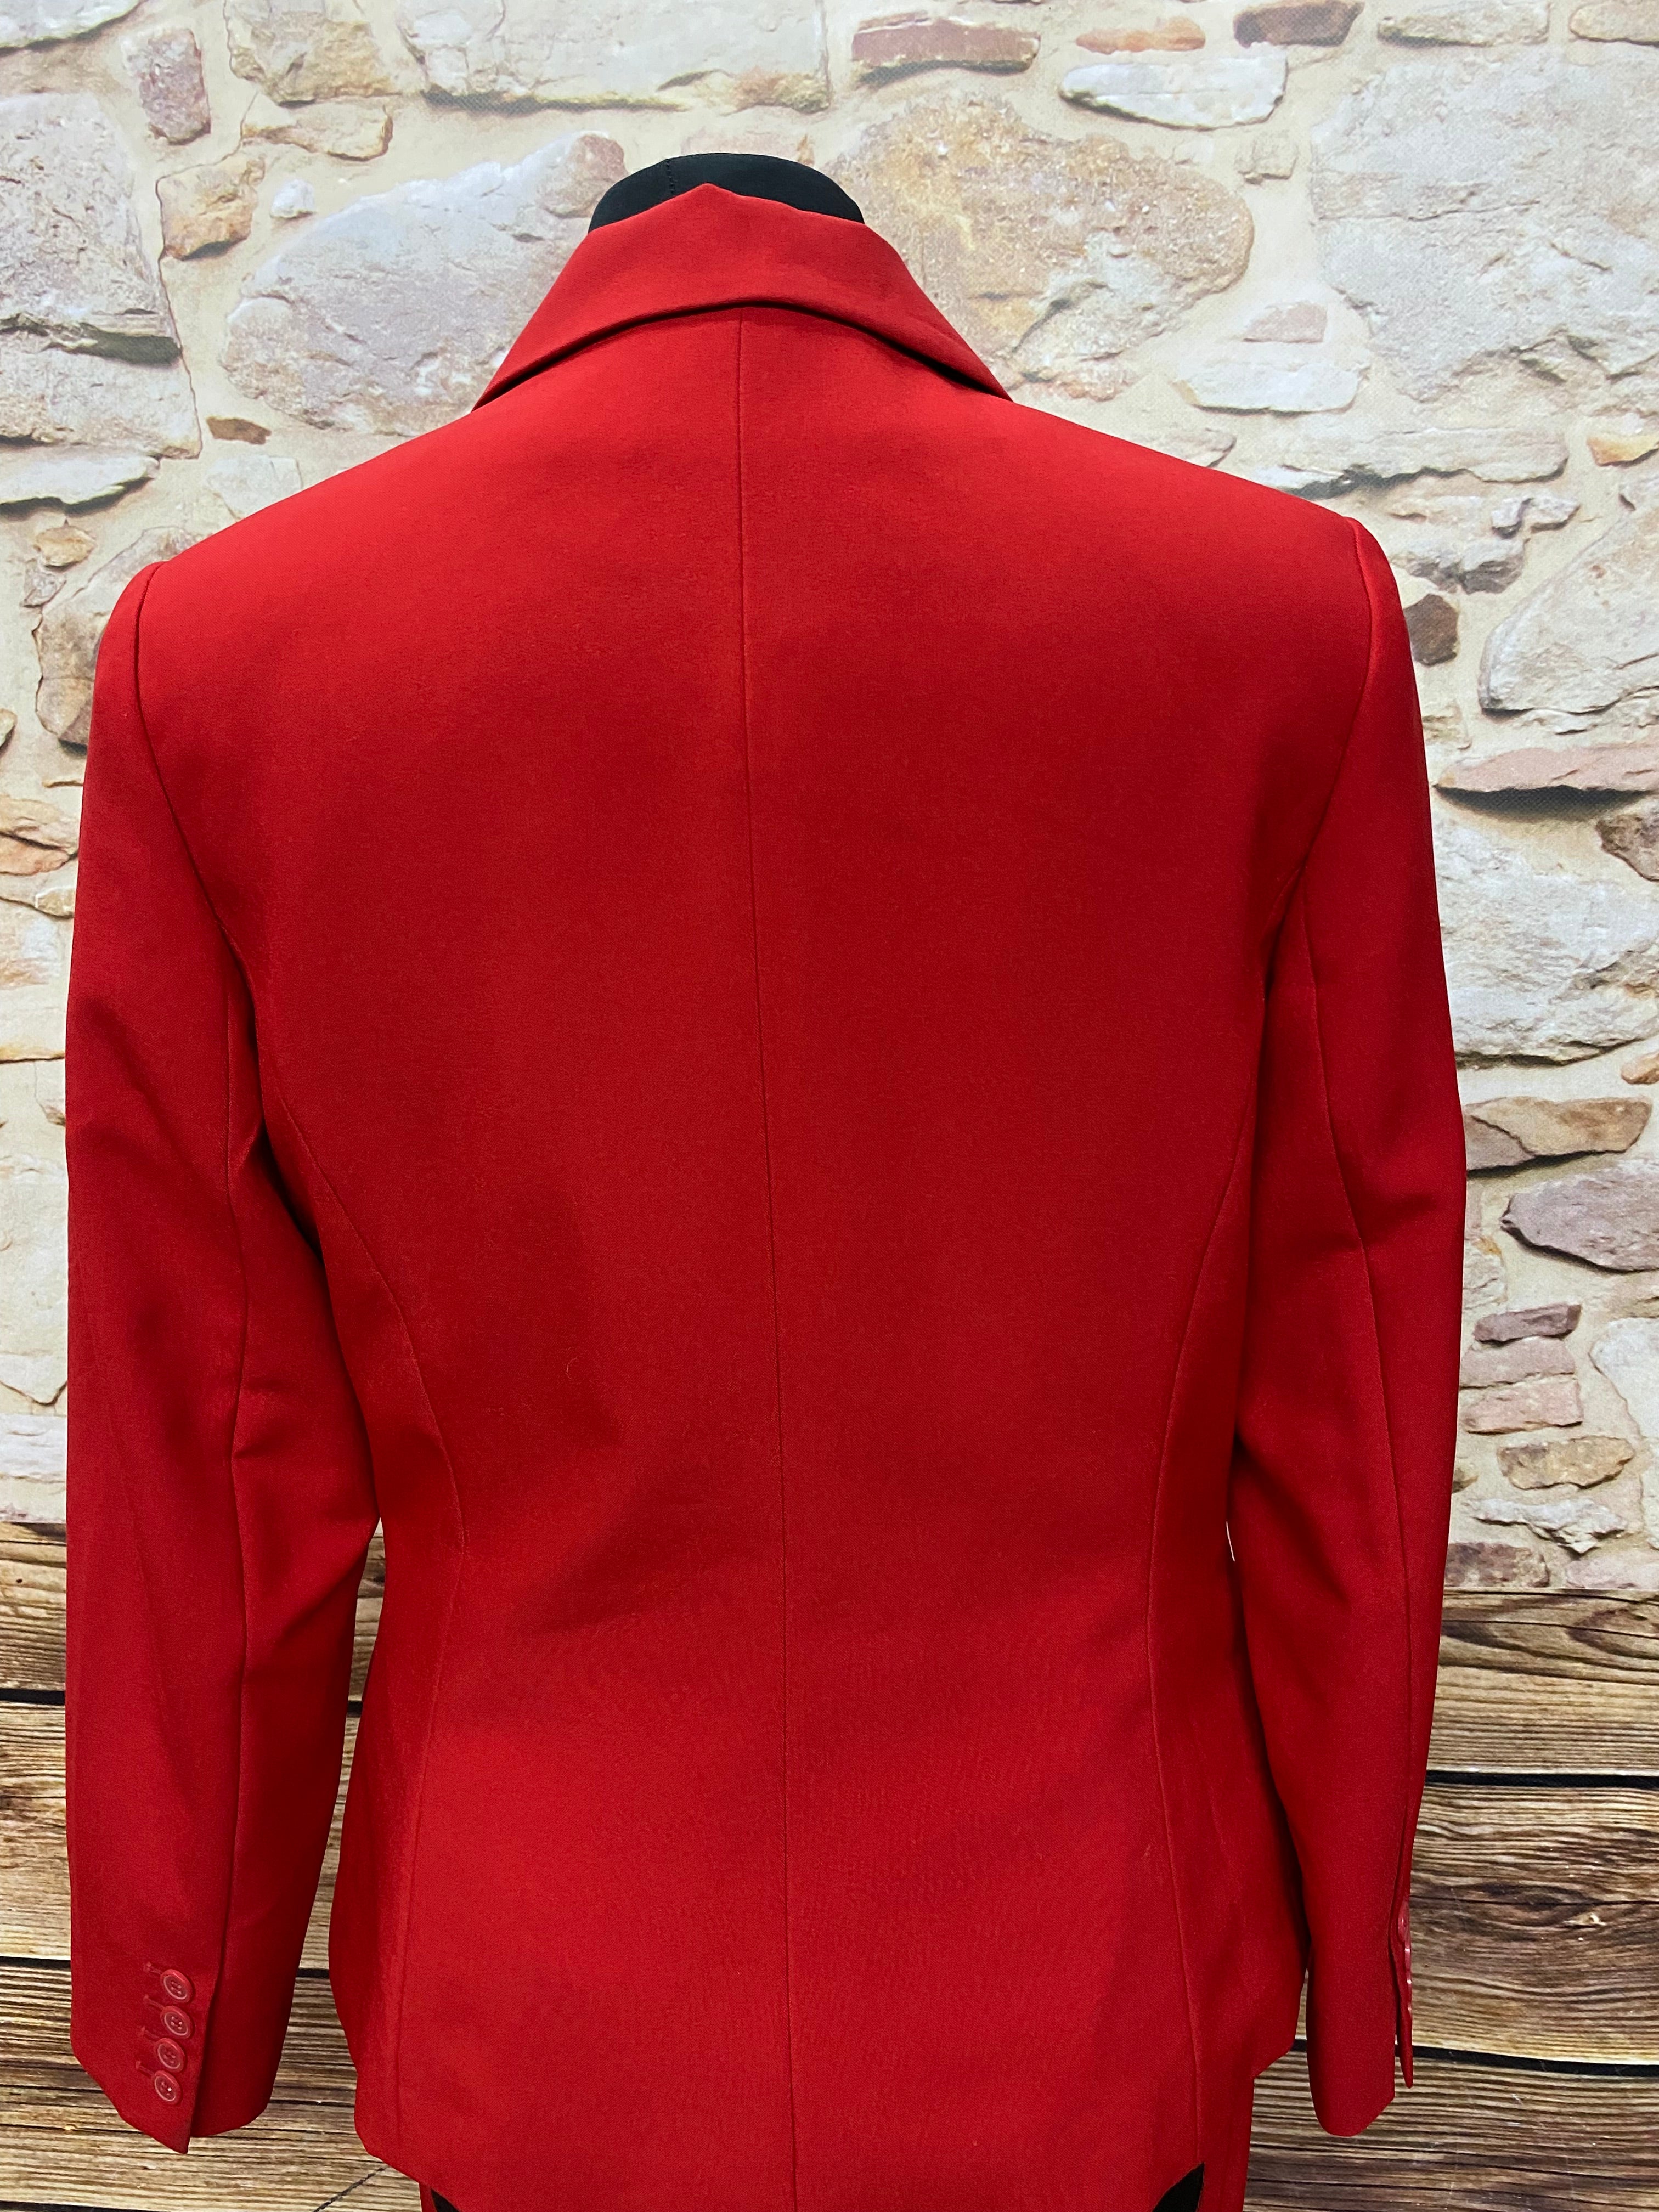 Roter Hosenanzug Damen Elegant 2 Teiler Blazer und Anzughosen Zweiteilig Gr.38